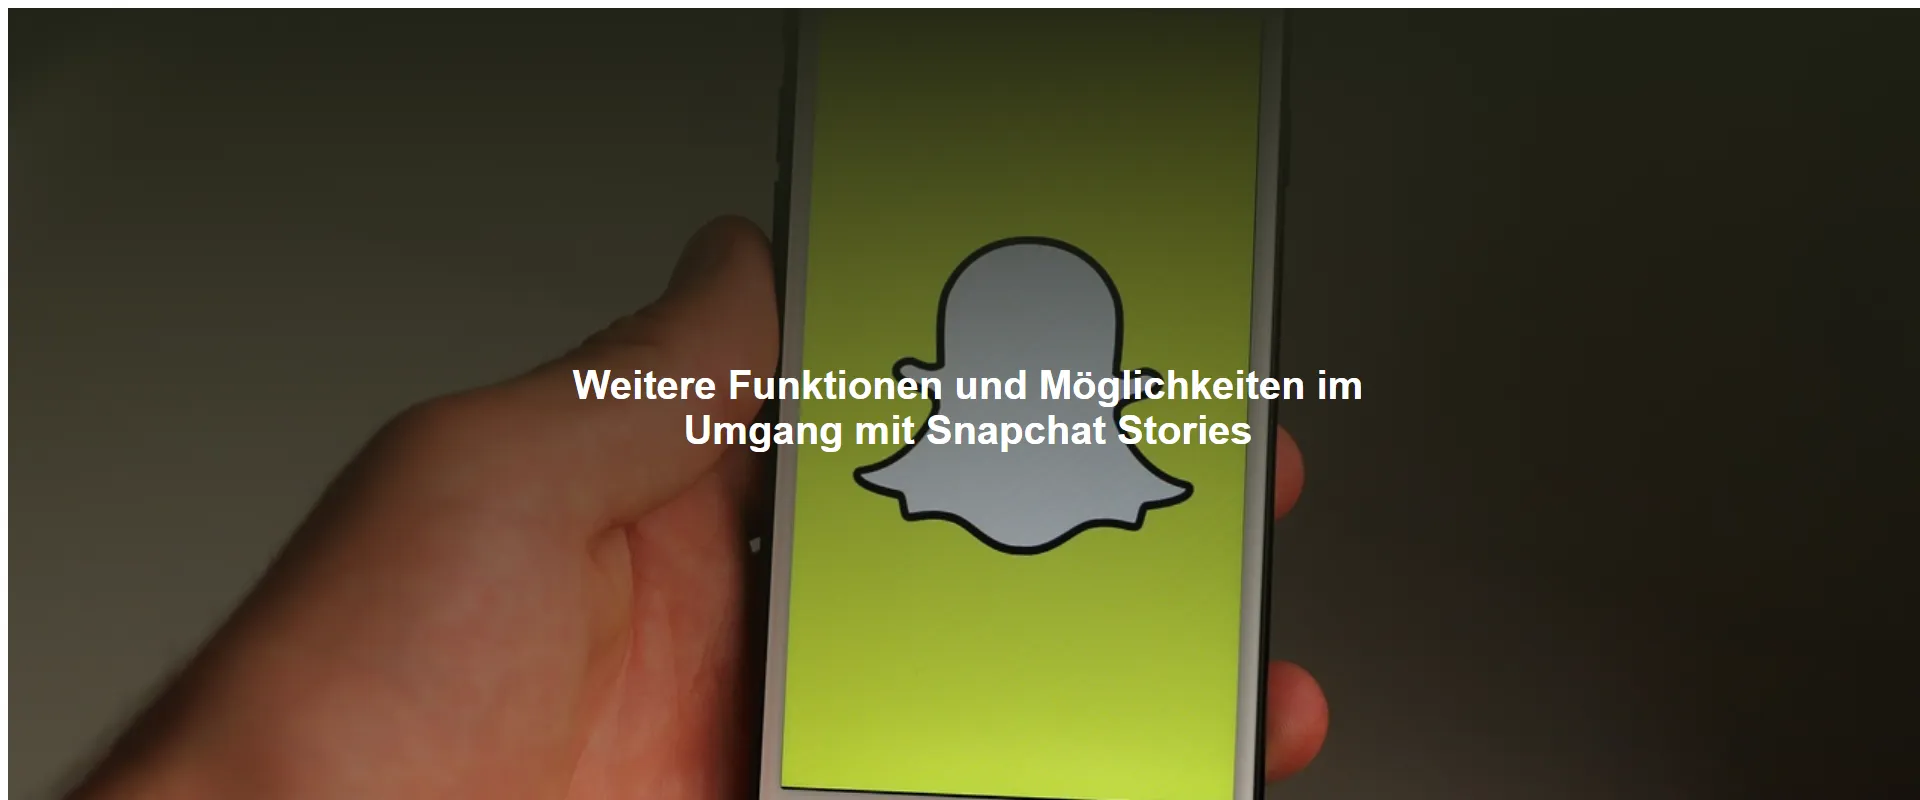 Weitere Funktionen und Möglichkeiten im Umgang mit Snapchat Stories